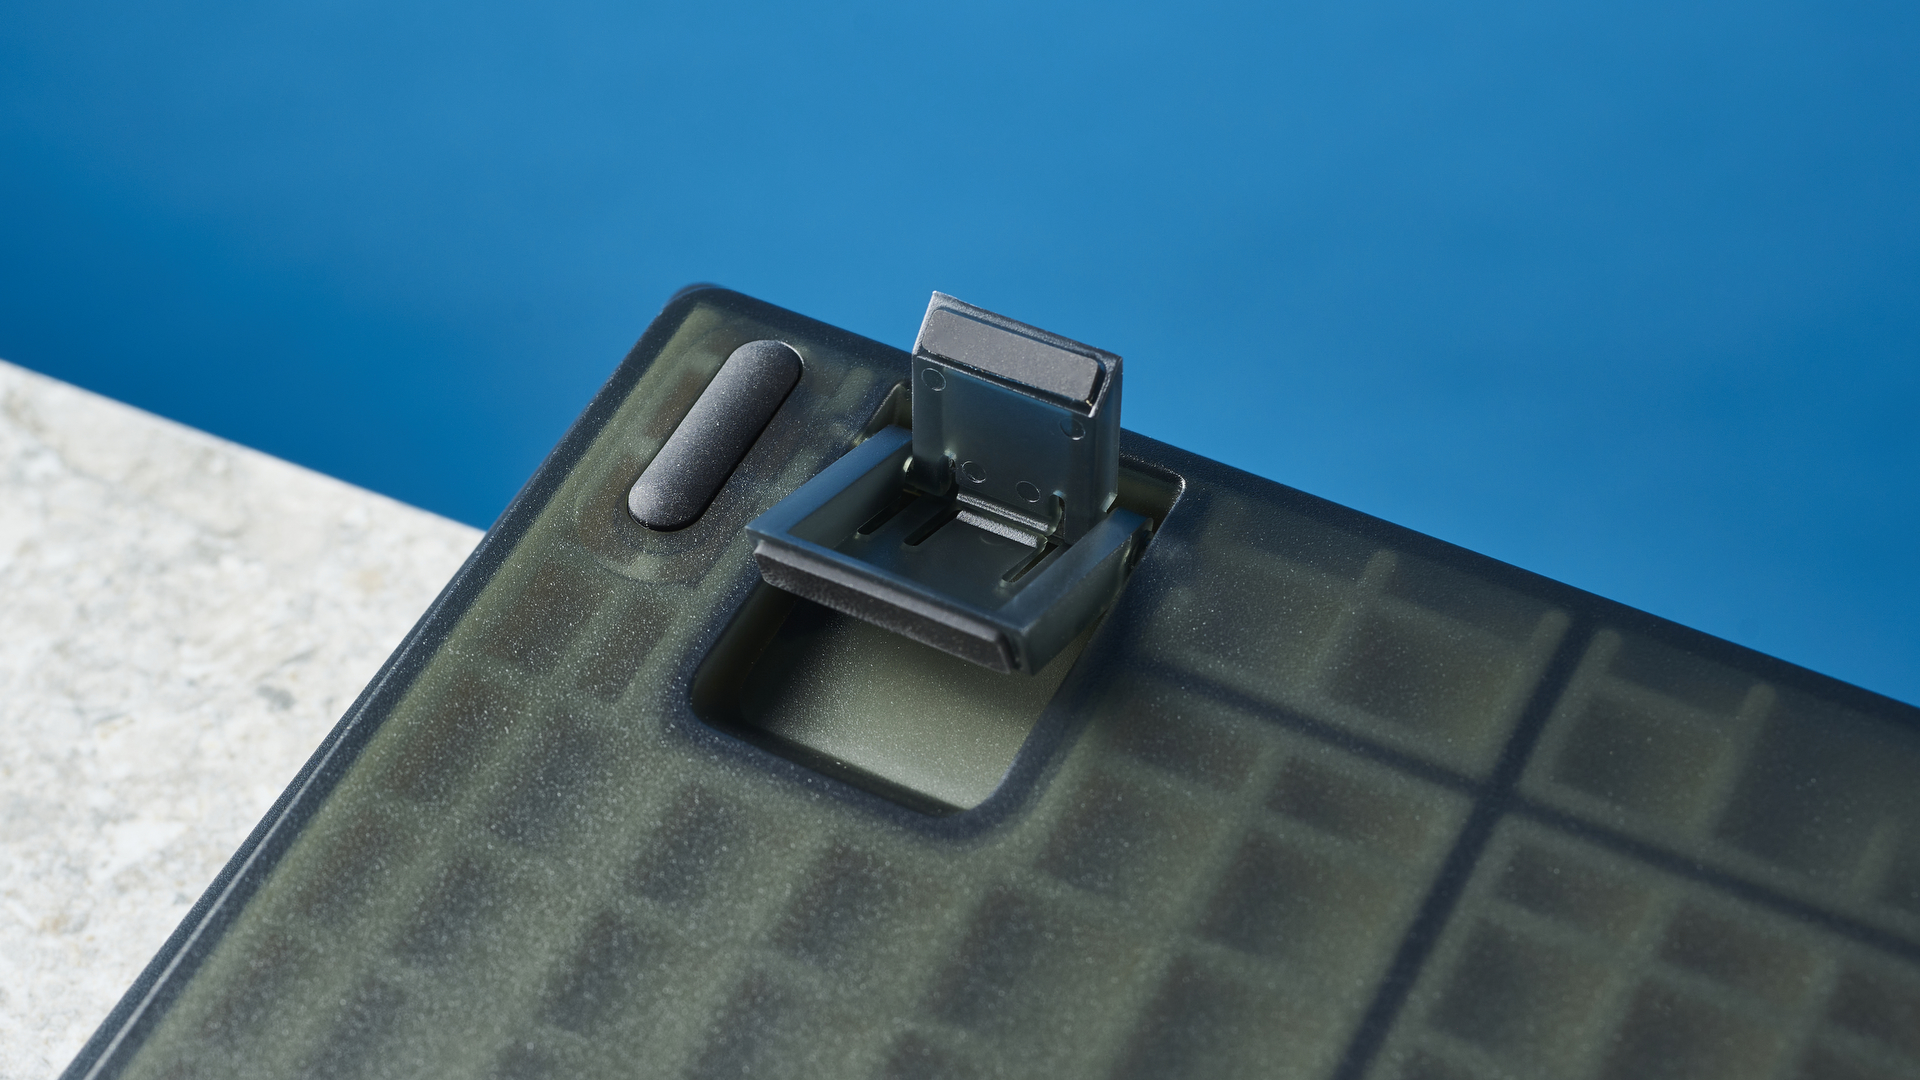 Keychron V6'nın gri, siyah ve turuncu tuş kapaklı siyah fotoğrafı.  Klavye, arka planda mavi bir duvar bulunan taş bir arduvazın üzerine yerleştirilmiştir.